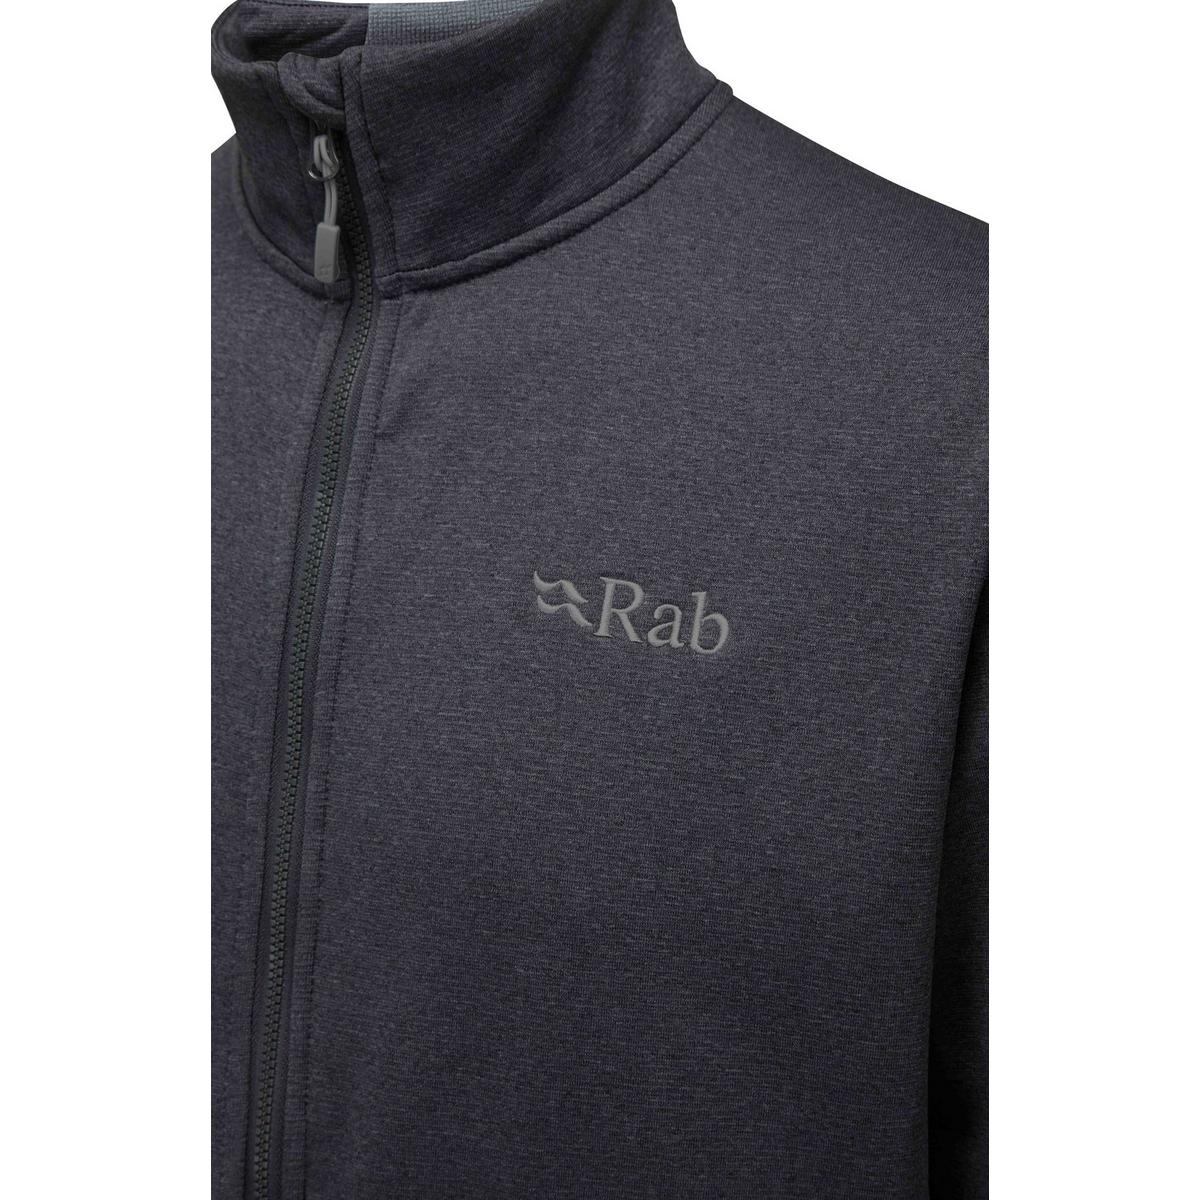 Rab Men's Geon Fleece Jacket - Black